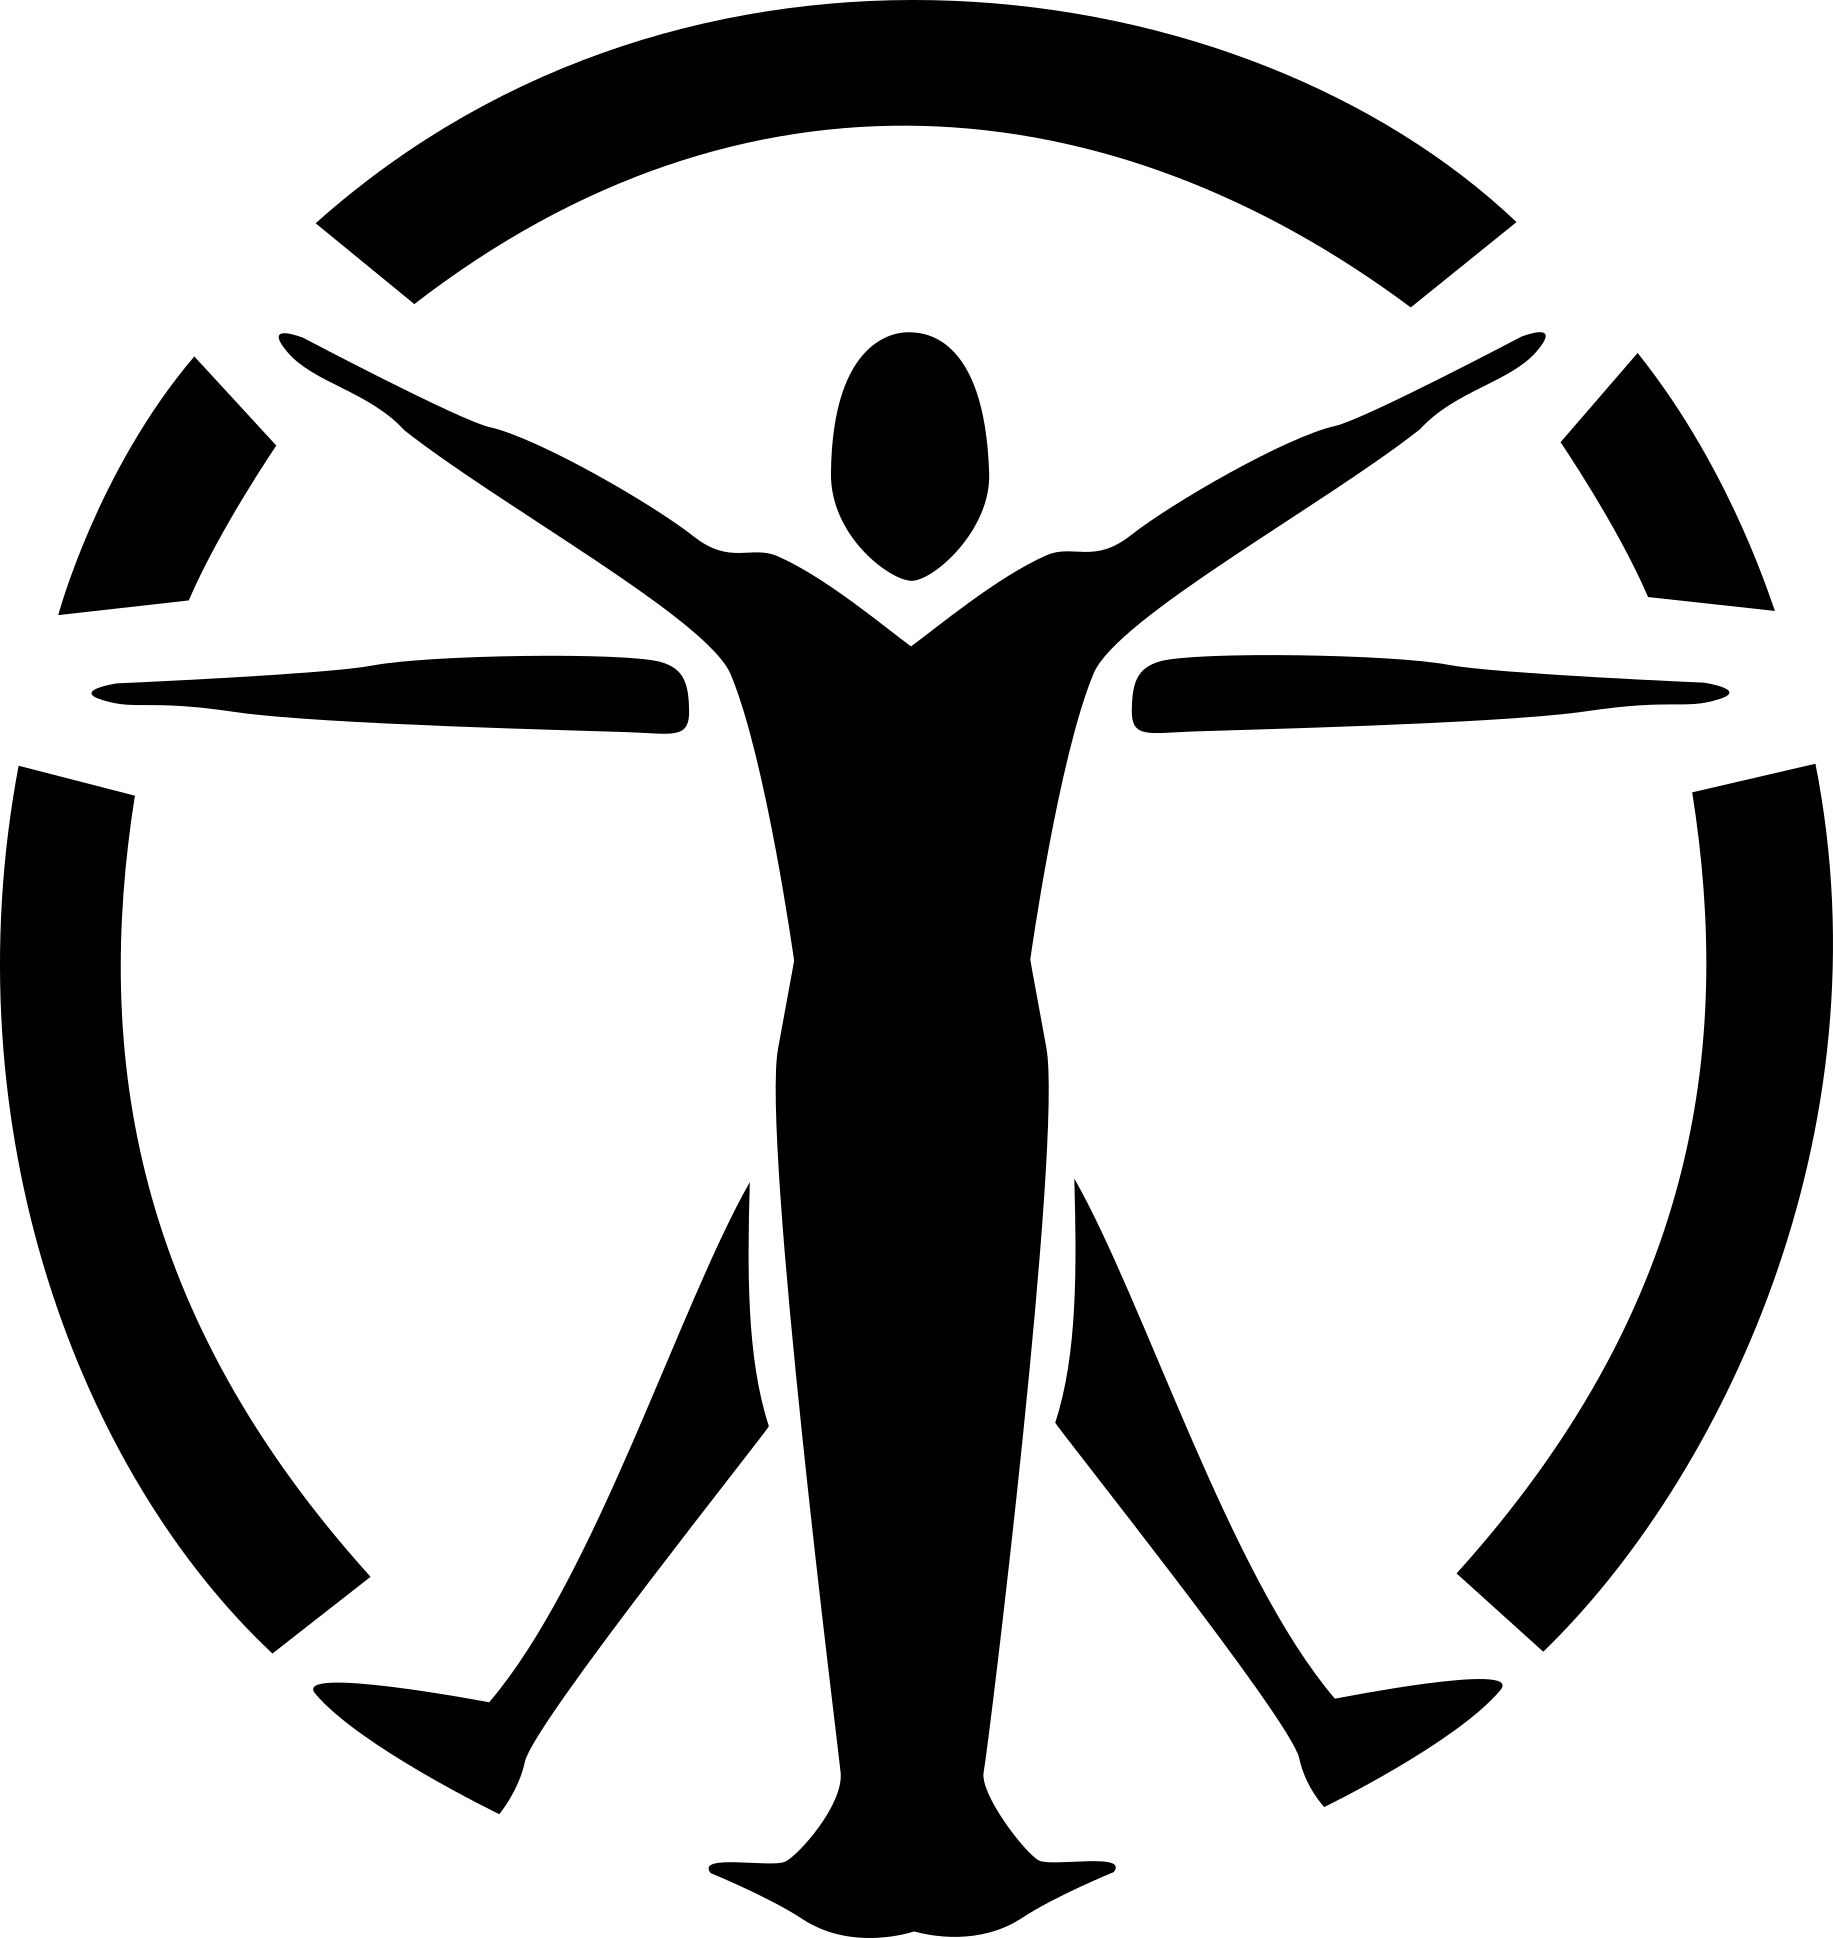 10, June 19, 2016 - Institute Logo Fallout 4 (1833x1938)